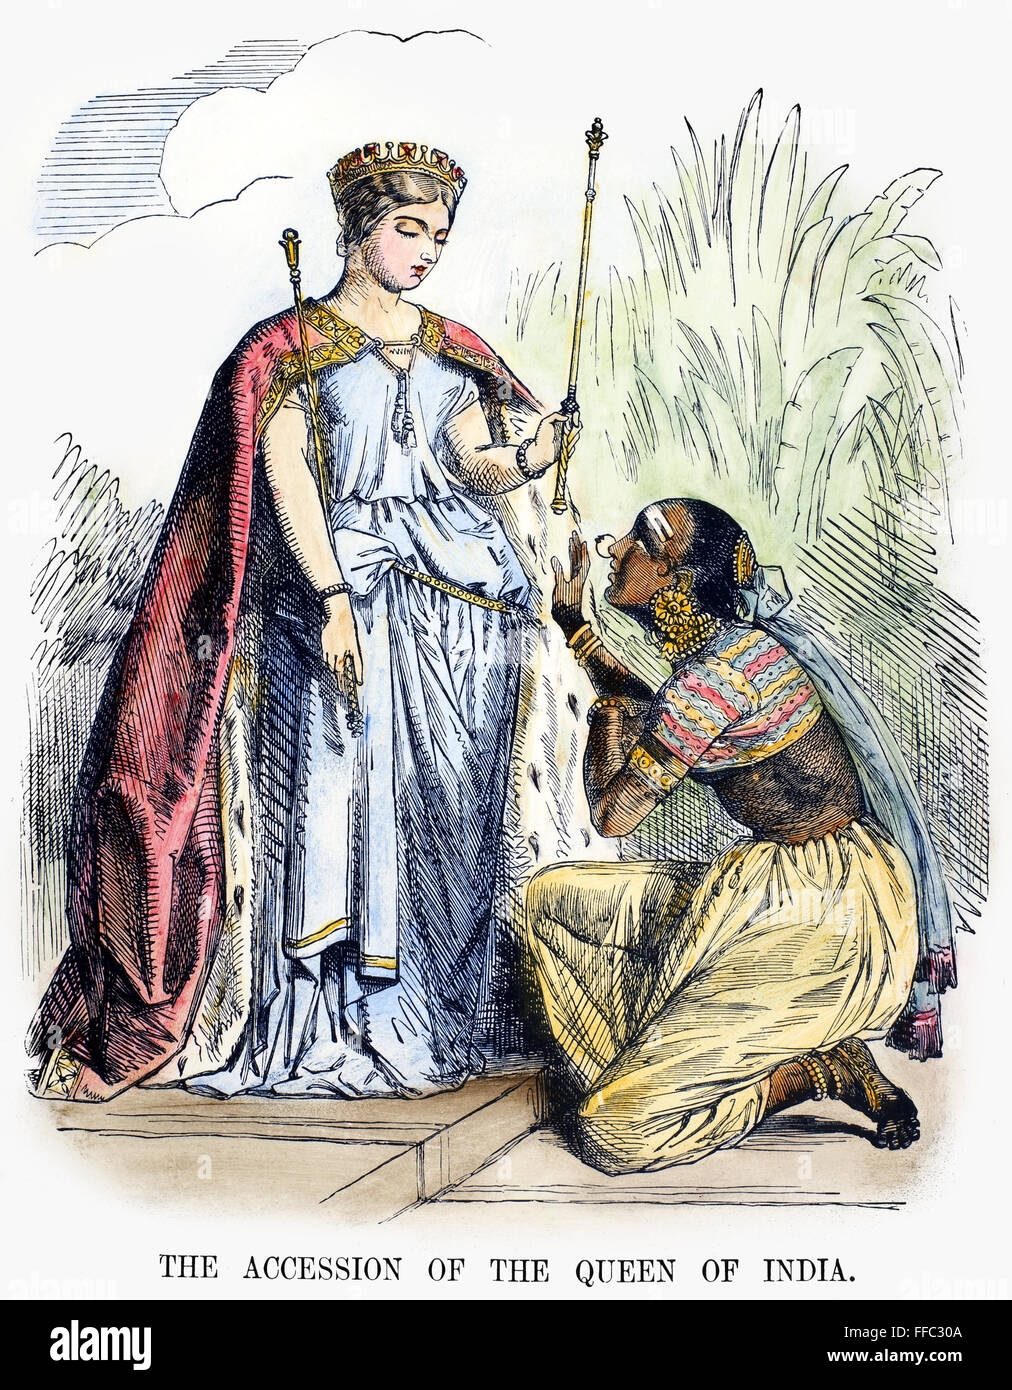 Inde : l'autorité britannique, 1858. /N'Til Adhésion de la Reine de l'Inde." La reine Victoria représenté dans une caricature de 1858, sur le transfert des affaires indiennes de l'East India Company à la Couronne britannique à la suite de la rébellion Sepoy. Banque D'Images